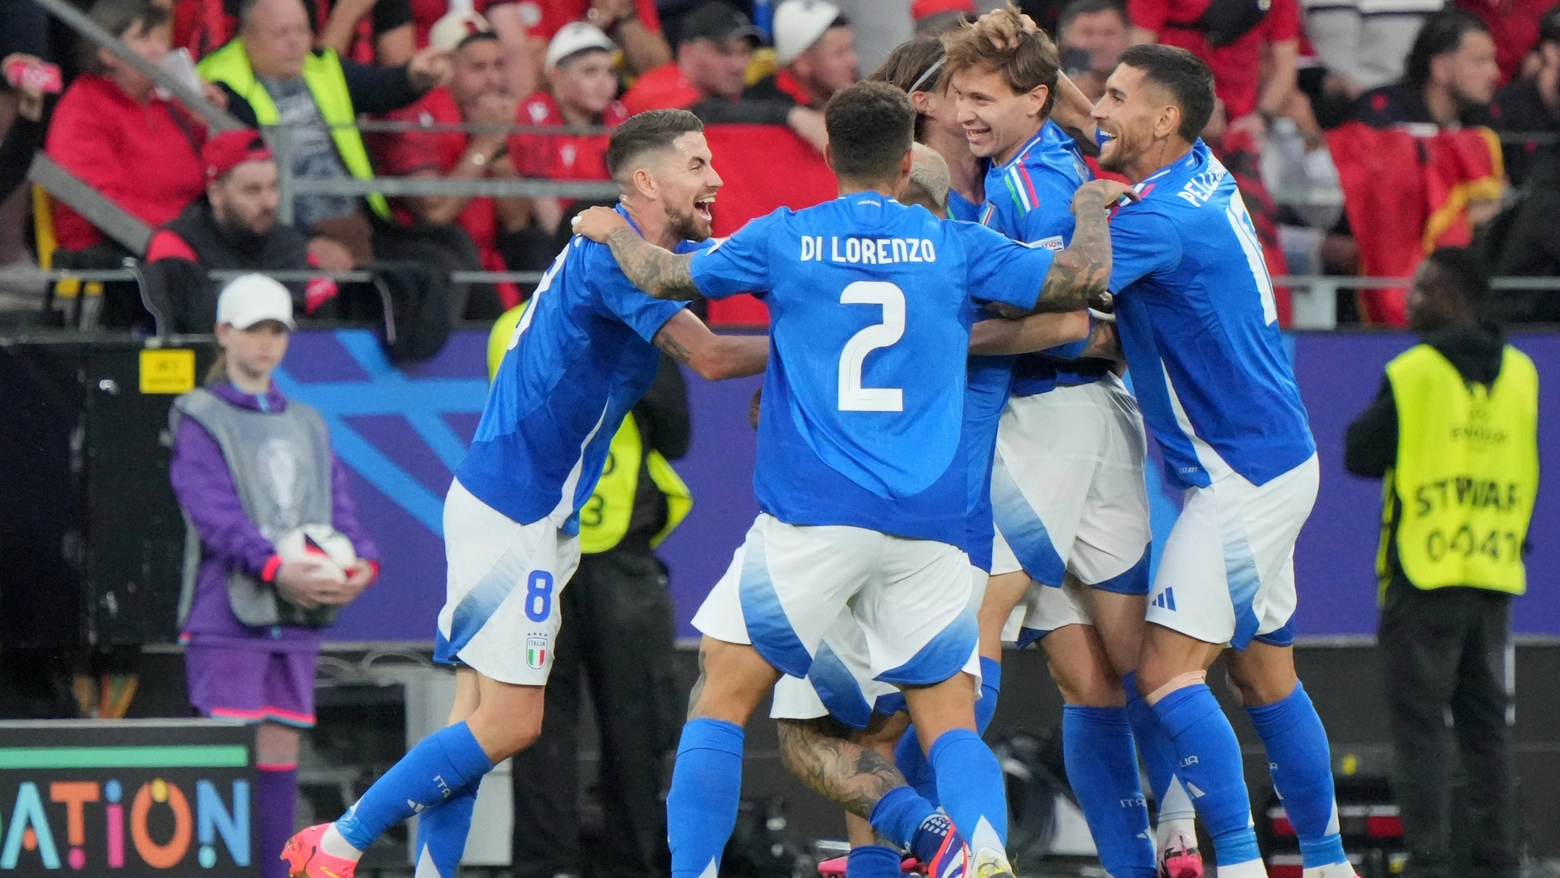 L'esultanza dei giocatori azzurri: debutto vincente contro l'Albania